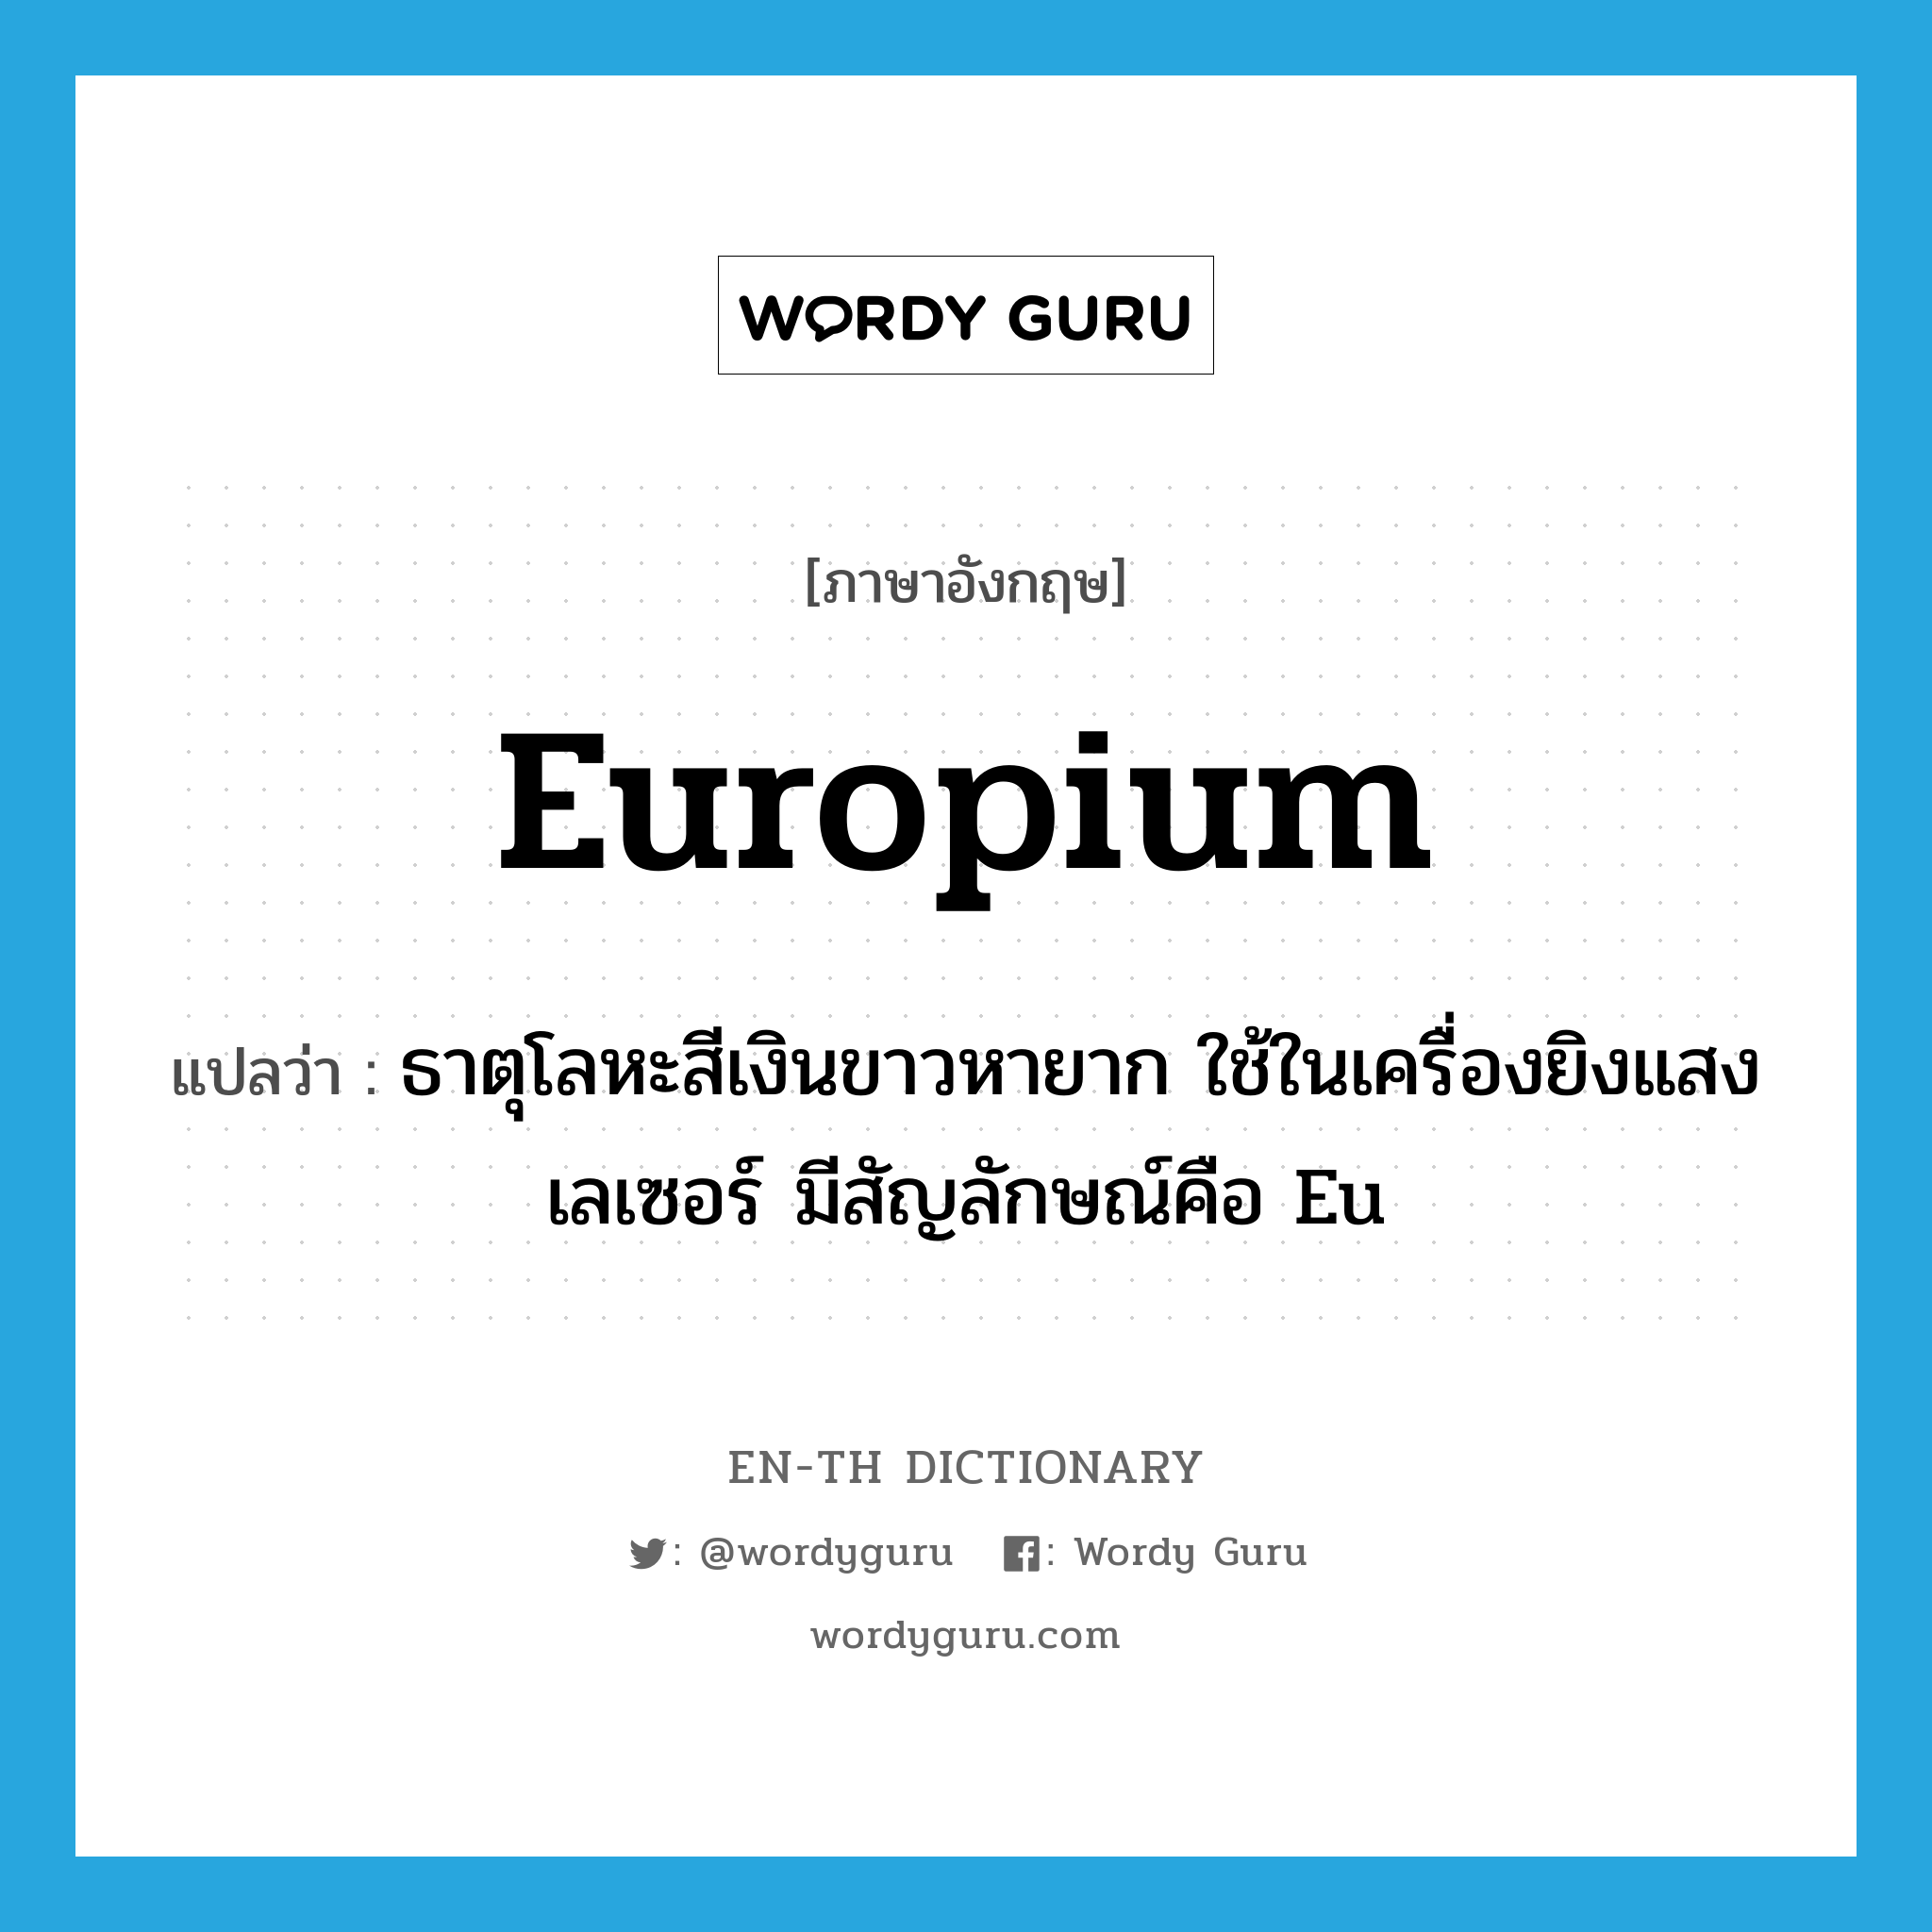 europium แปลว่า?, คำศัพท์ภาษาอังกฤษ europium แปลว่า ธาตุโลหะสีเงินขาวหายาก ใช้ในเครื่องยิงแสงเลเซอร์ มีสัญลักษณ์คือ Eu ประเภท N หมวด N